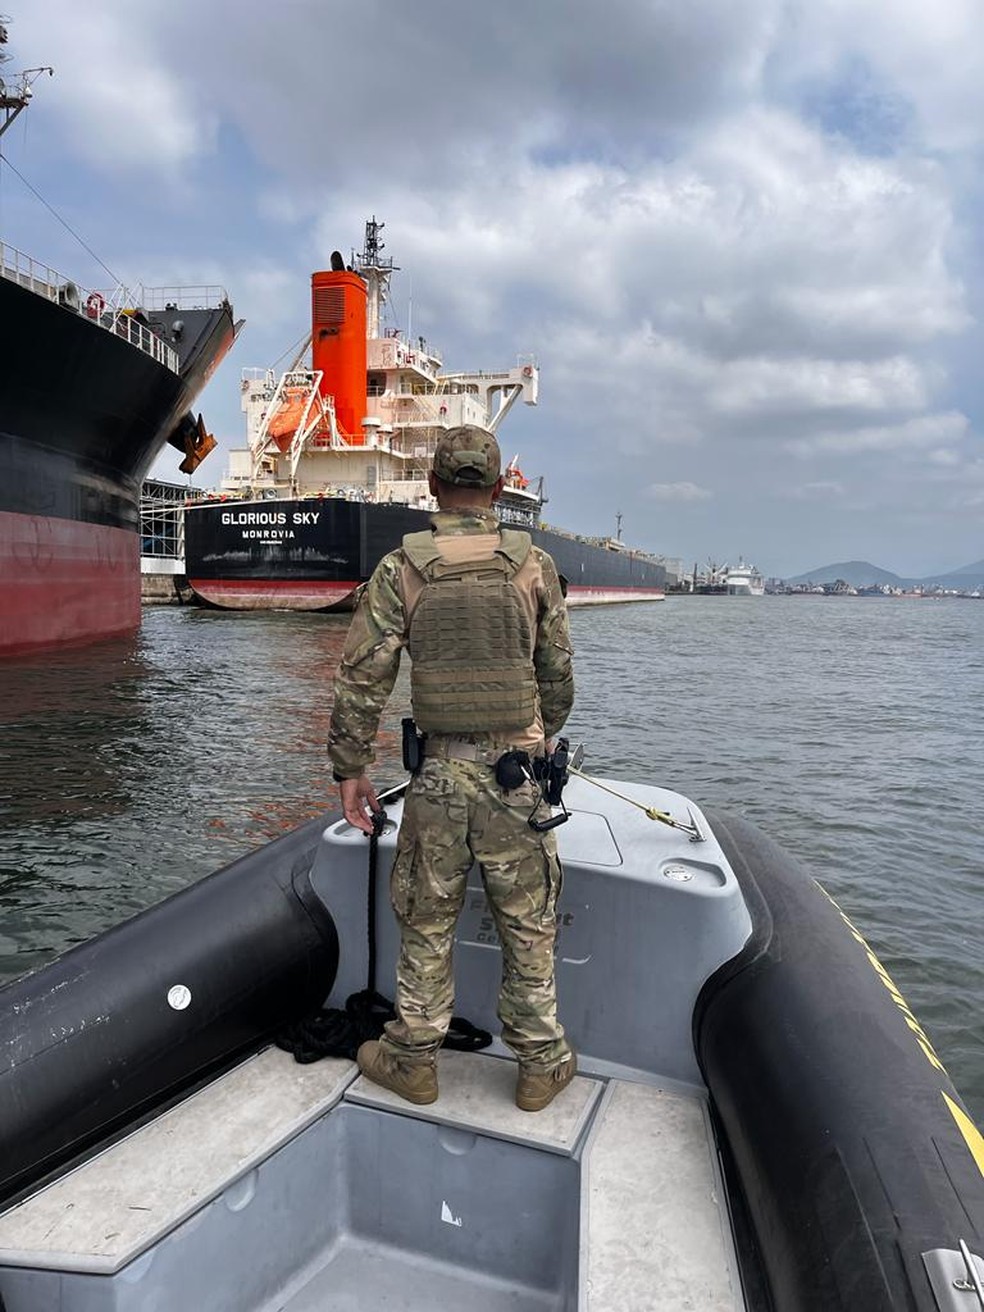 Mais de 190 kg de cocaína encontrados durante Operação Ágata estavam escondidos na caixa de mar de um navio no Porto de Santos — Foto: Divulgação/Polícia Federal